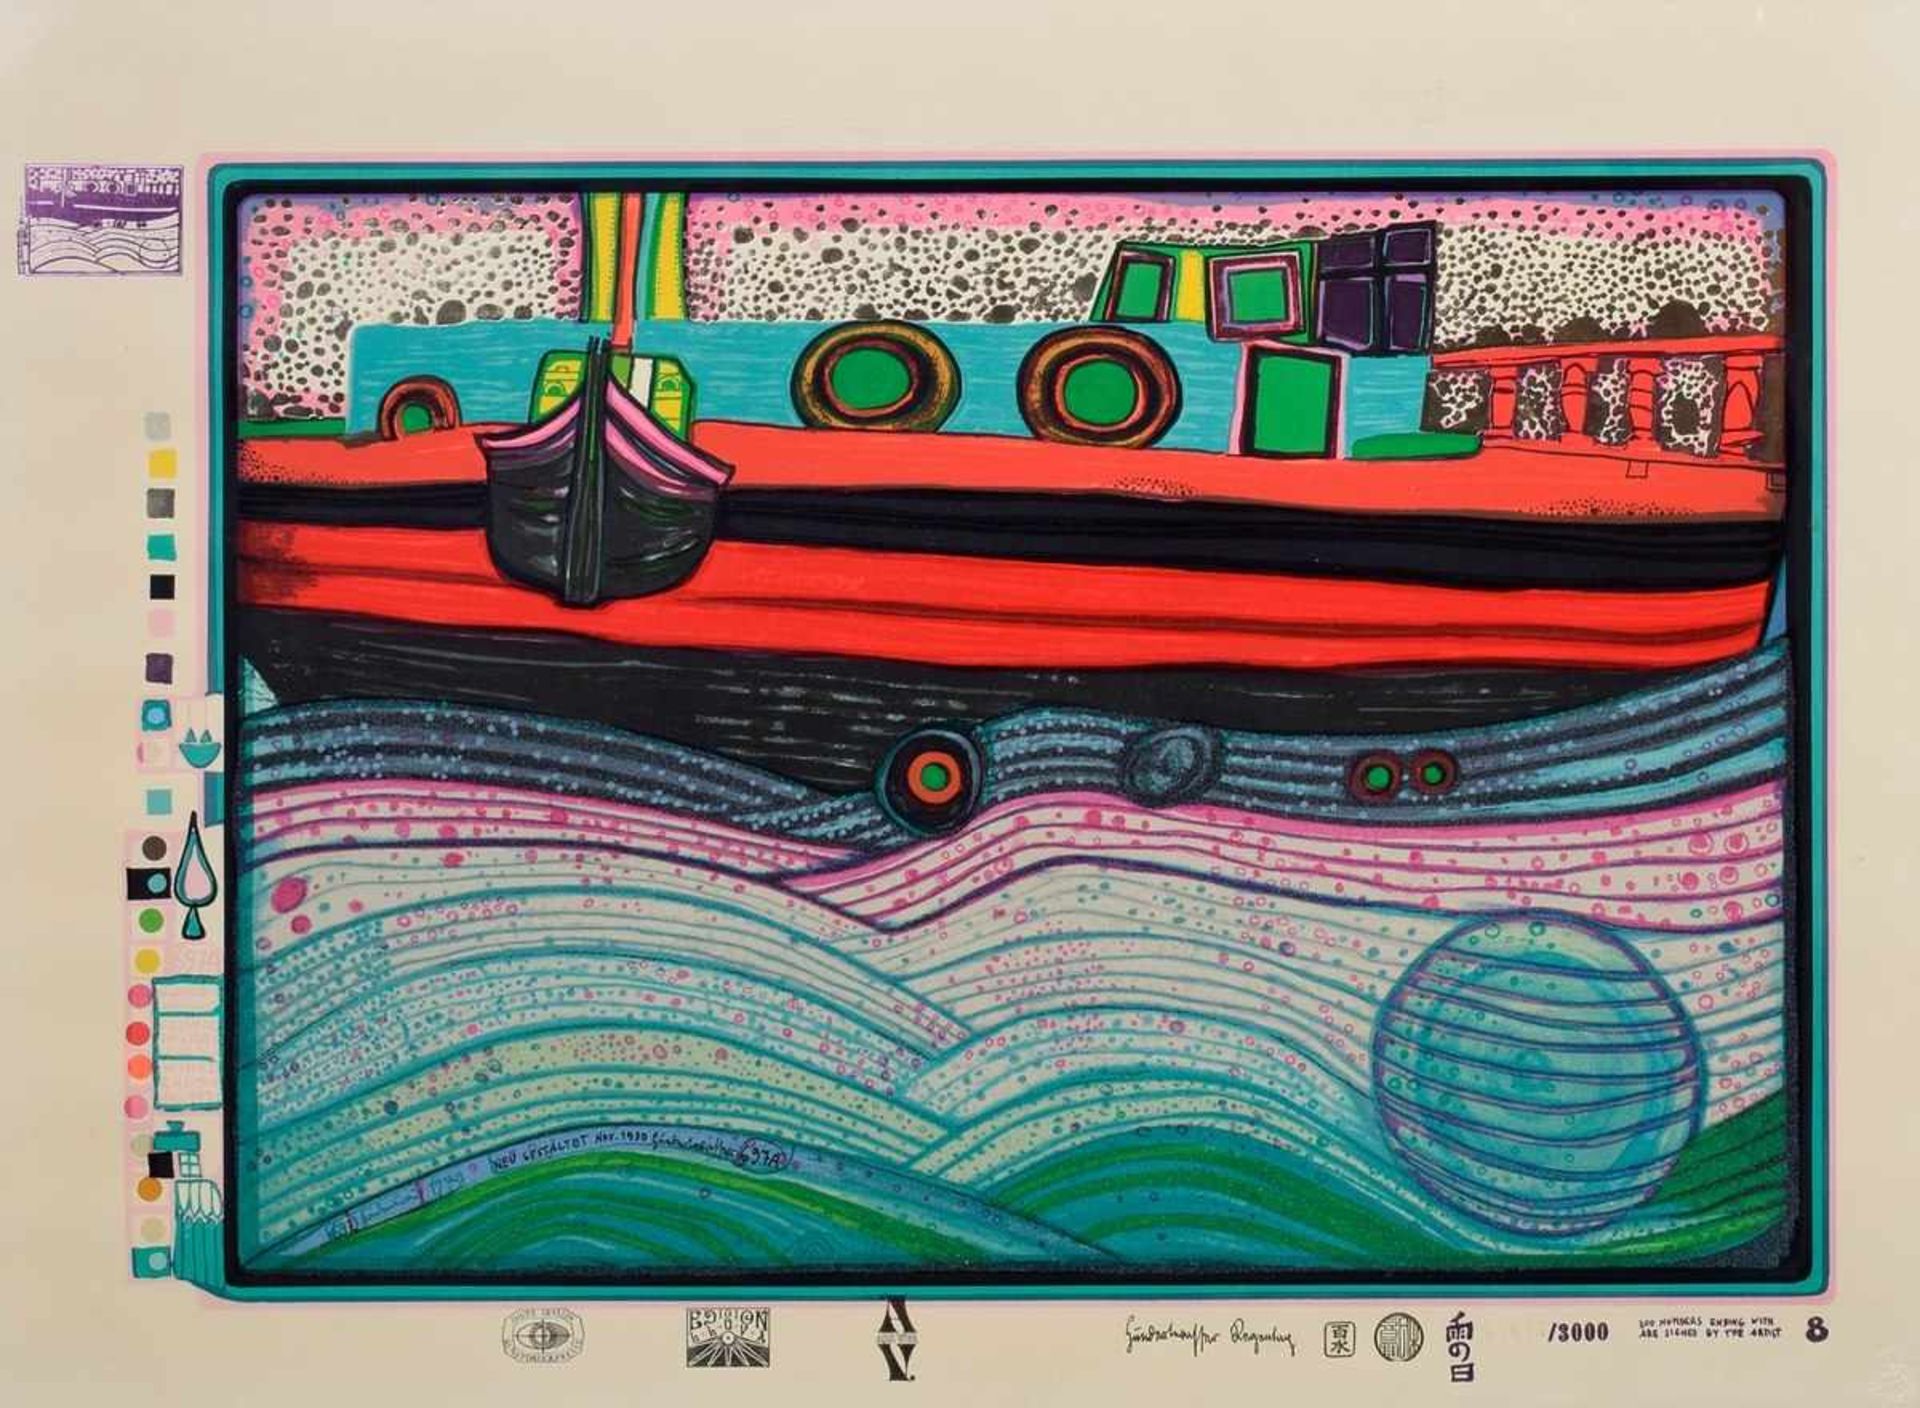 Hundertwasser, Friedensreich (1928-2000) "Regentag auf Liebe Wellen" aus der Mappe "Regentag (Look